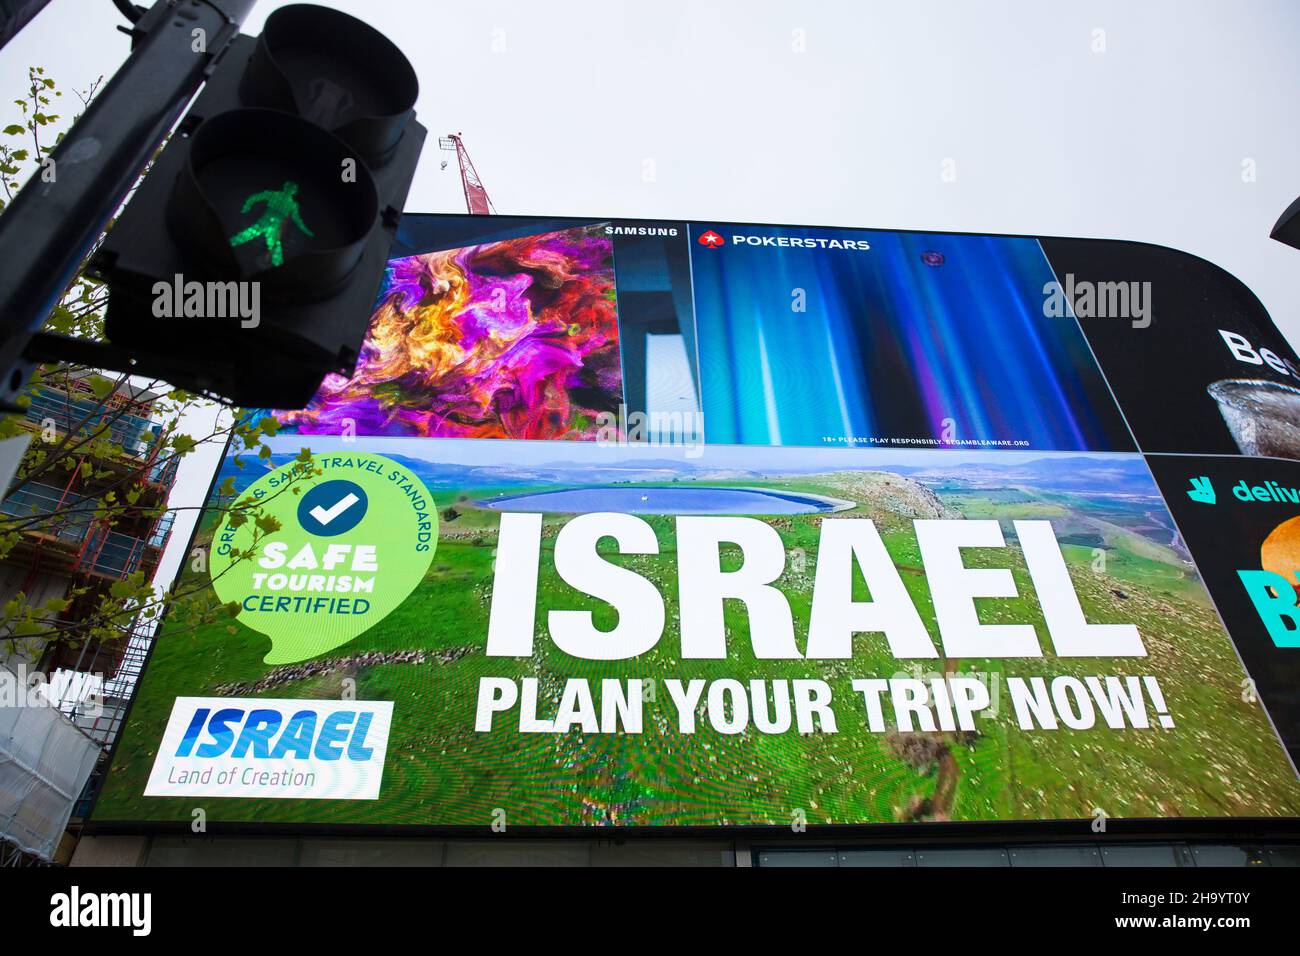 Eine Werbung für den israelischen Tourismus ist auf einer großen elektrischen Tafel im Piccadilly Circus, London, zu sehen. Stockfoto